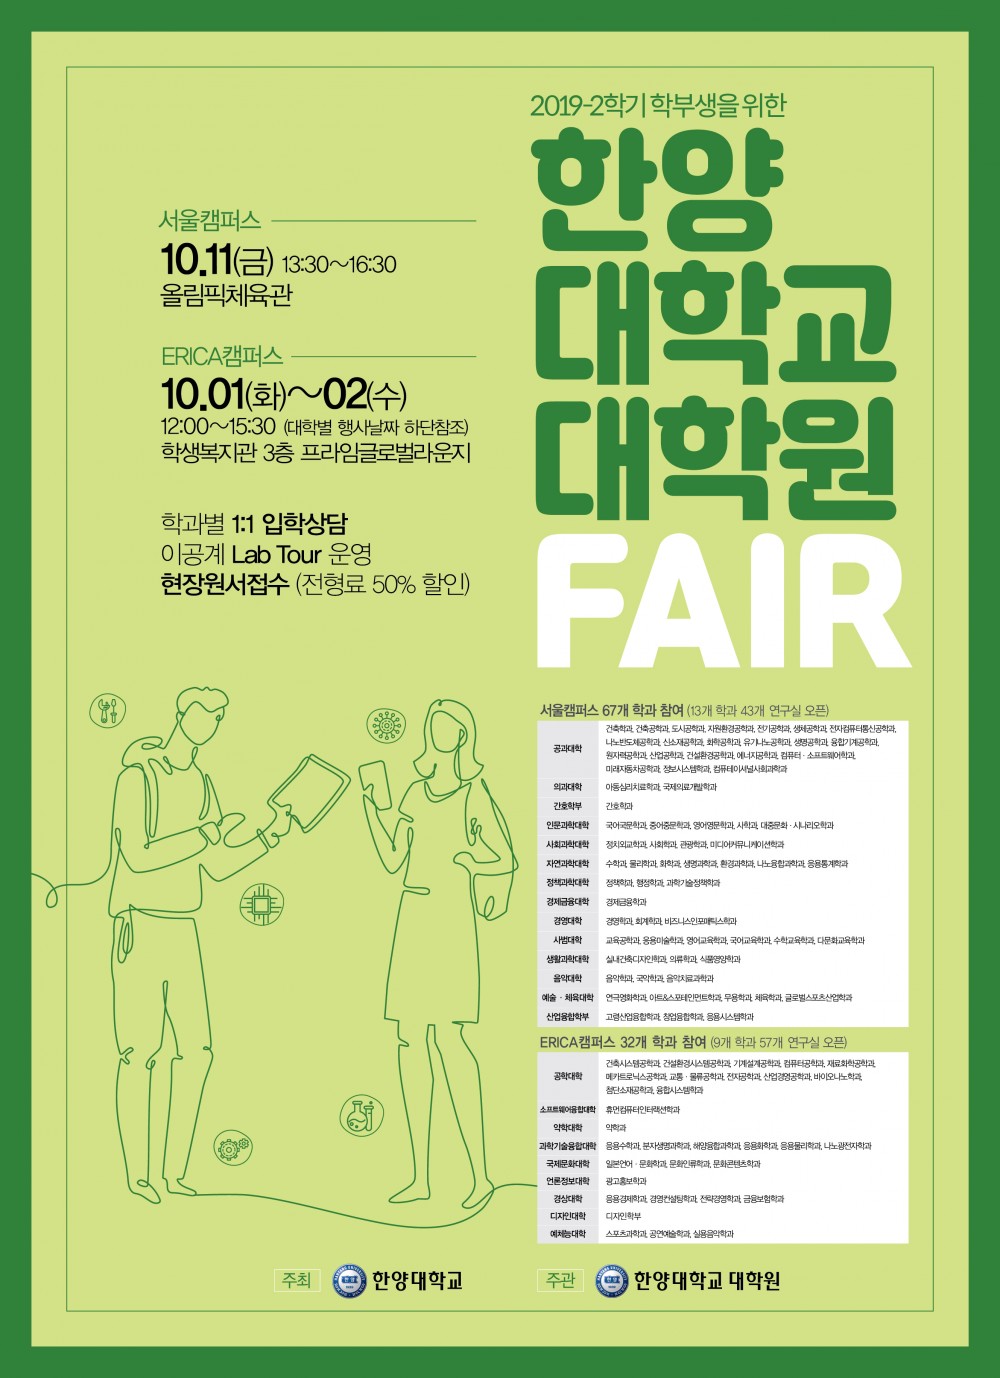 2019-2 대학원Fair 포스터